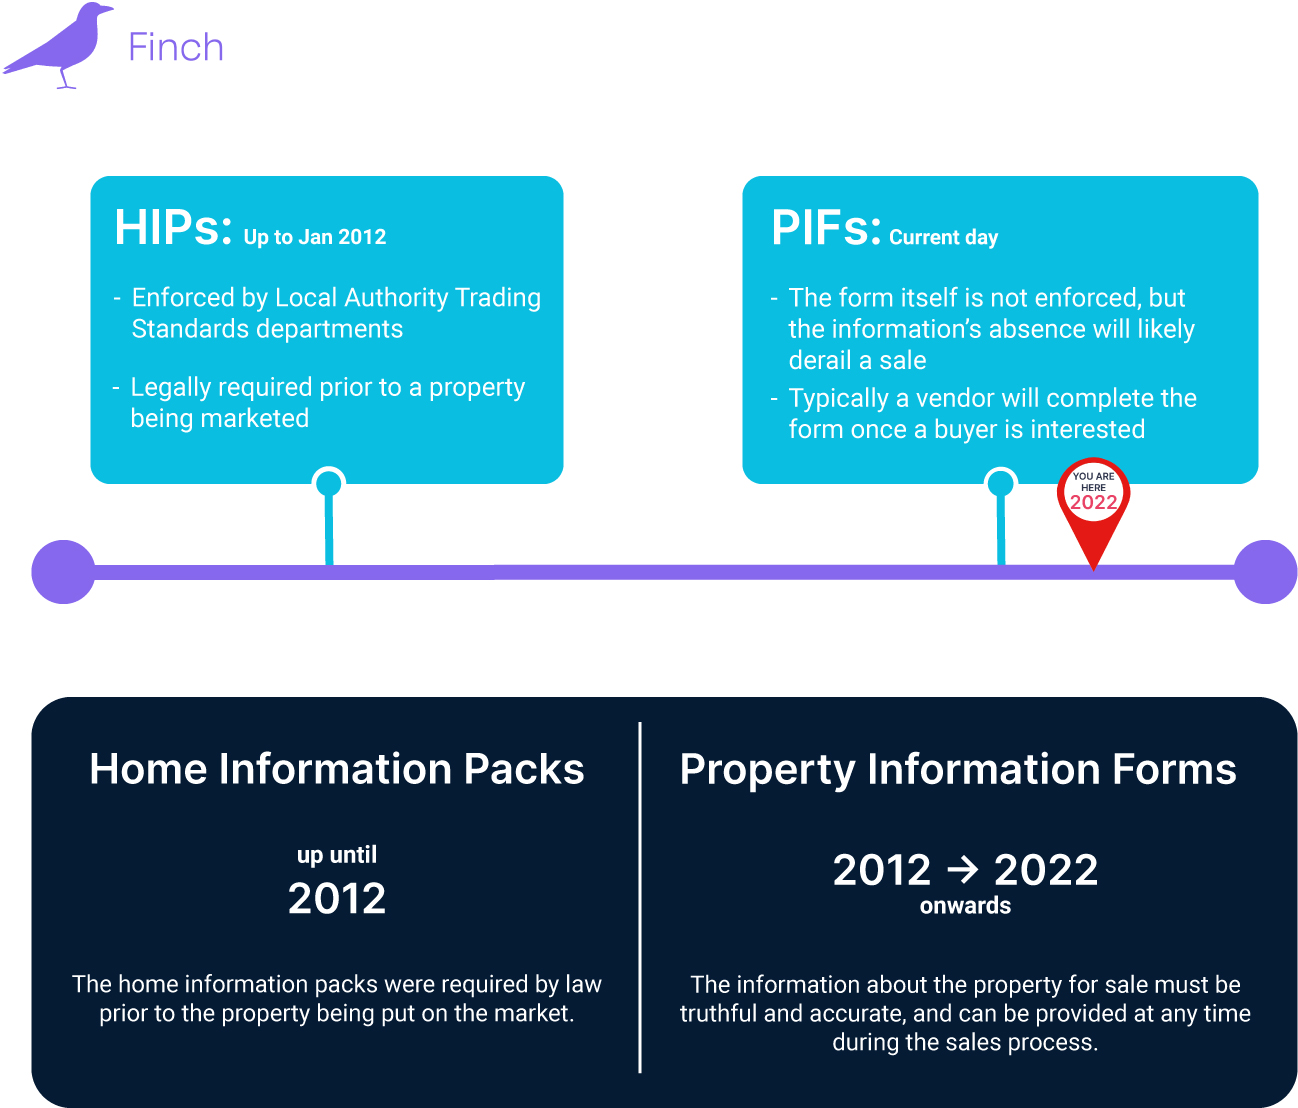 Property Information Form timeline